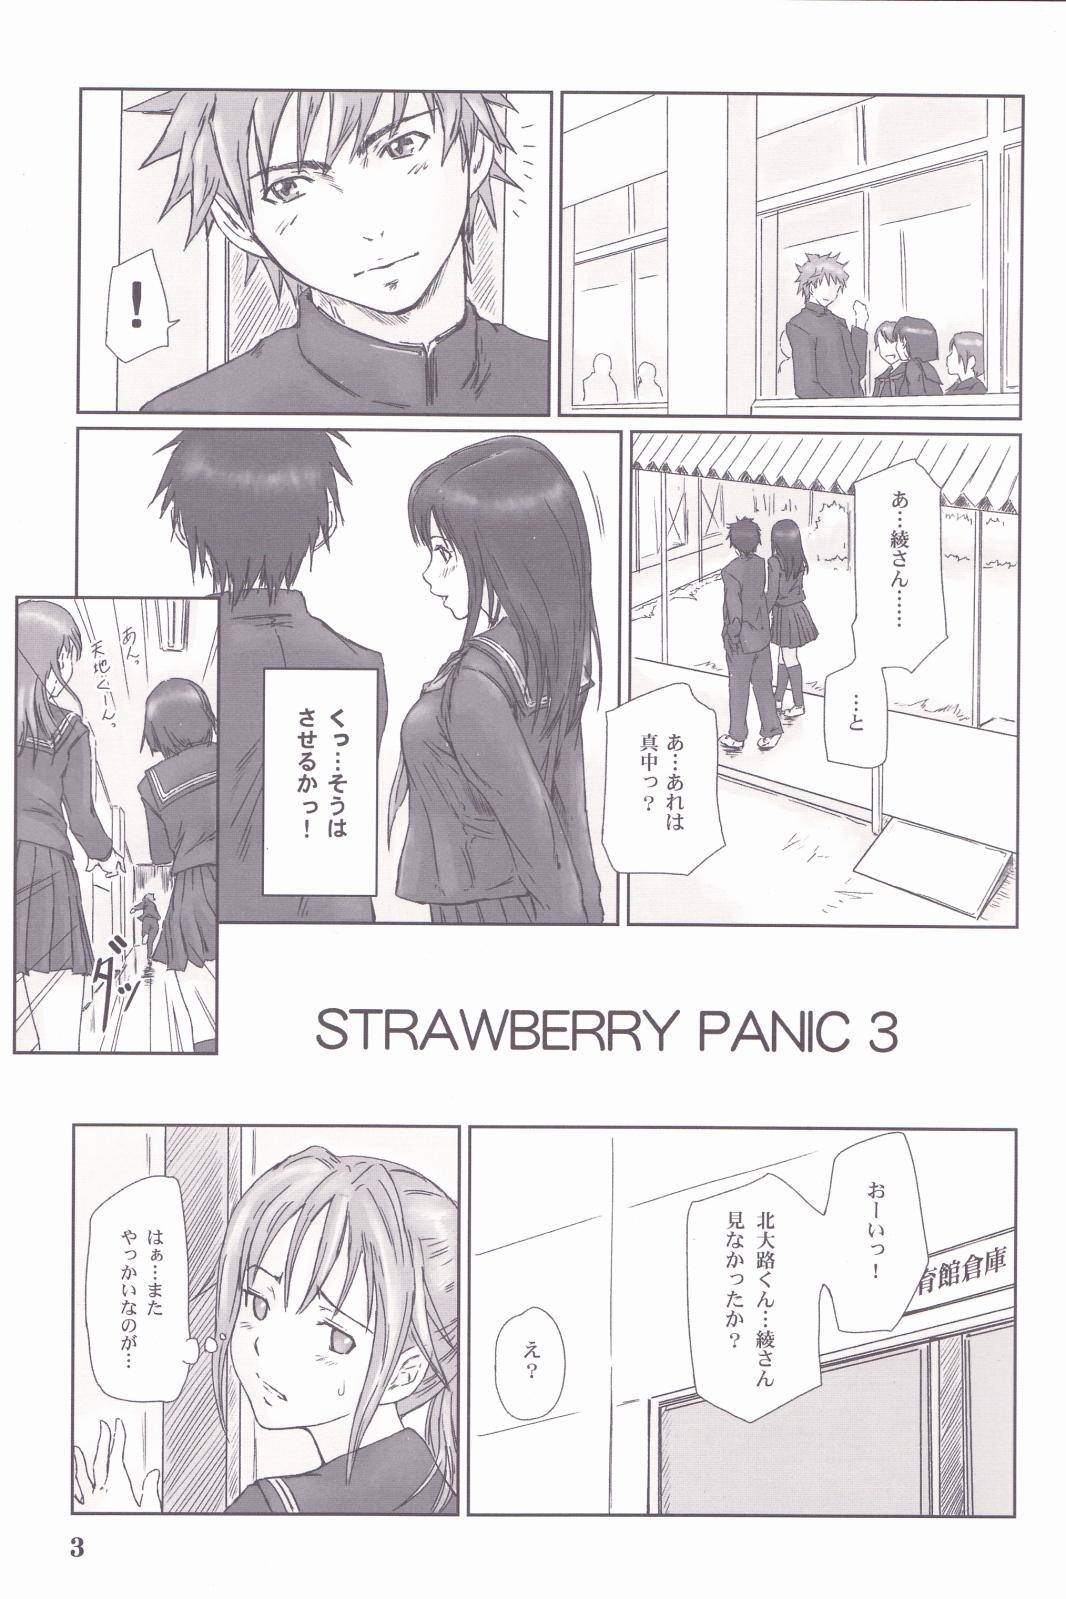 Korean STRAWBERRY PANIC 3 - Ichigo 100 Cheat - Page 2